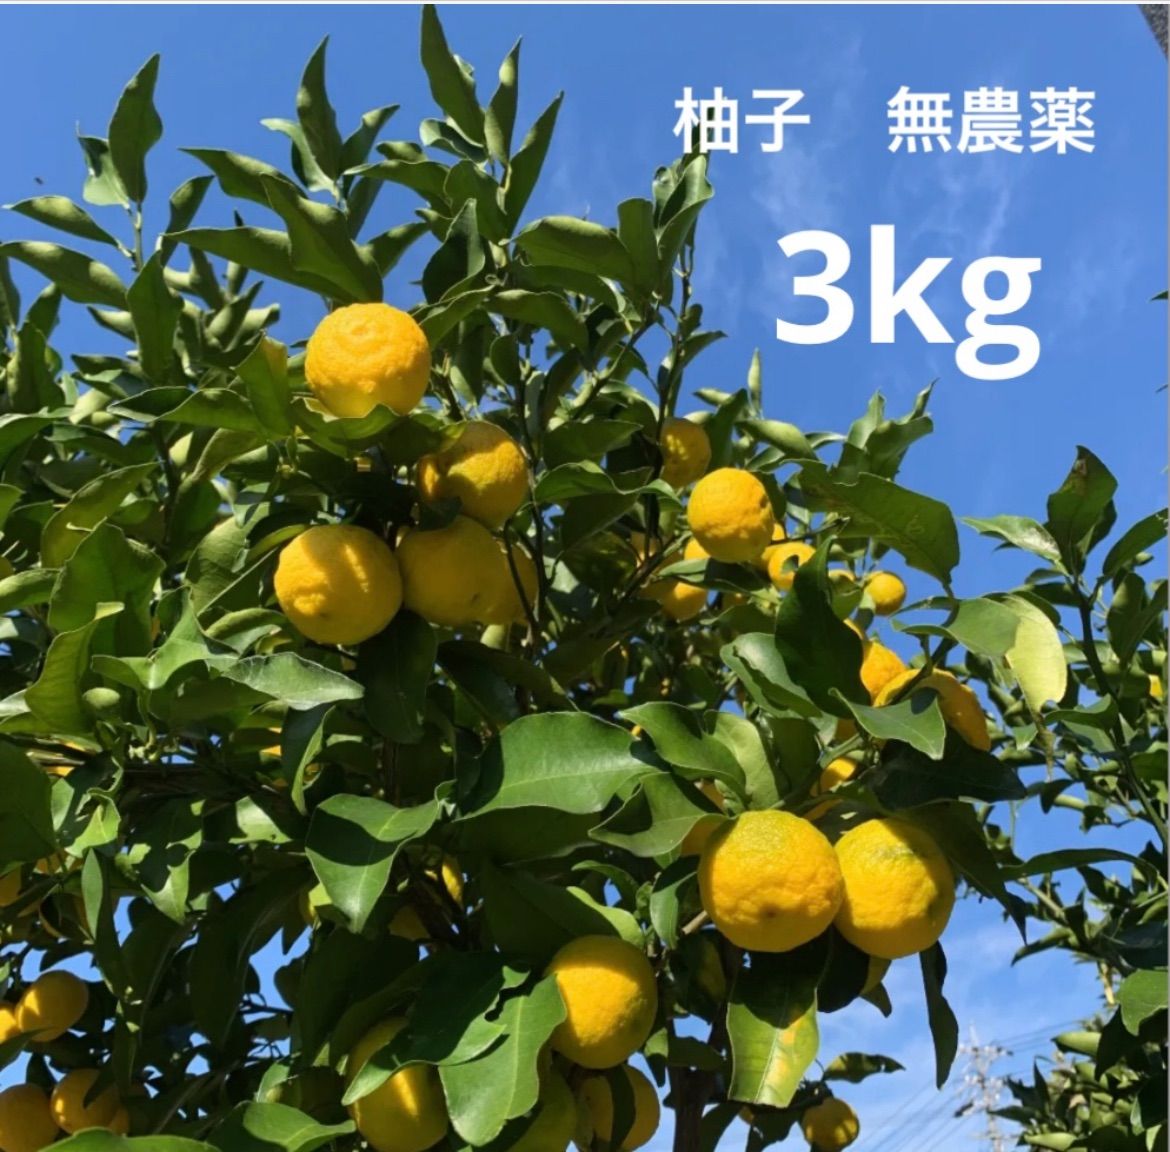 にぃな様専用 3kg 柚子 完全無農薬 - メルカリ